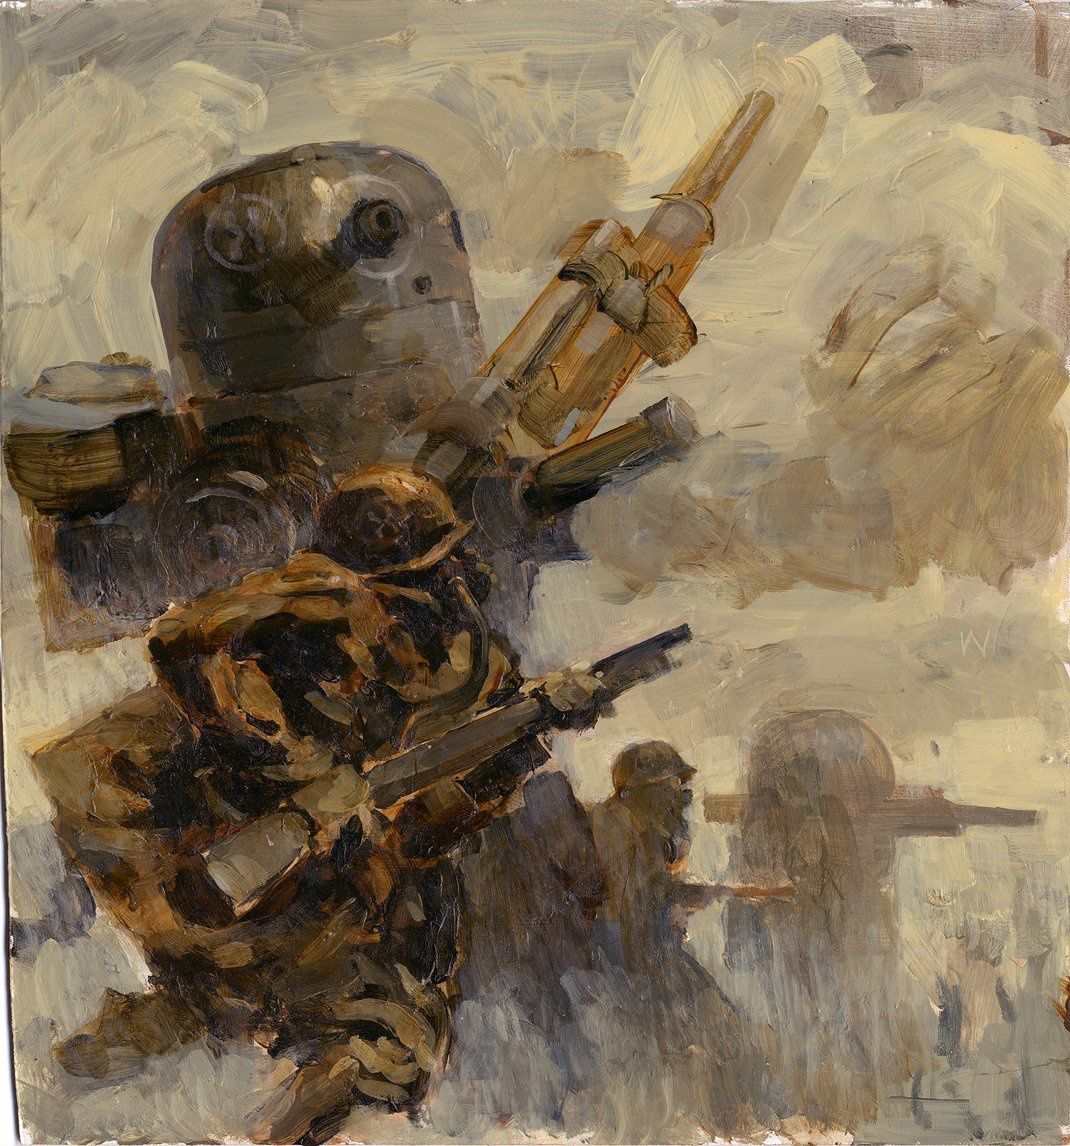 Peinture de robots dans la guerre mondiale par Ashley Wood